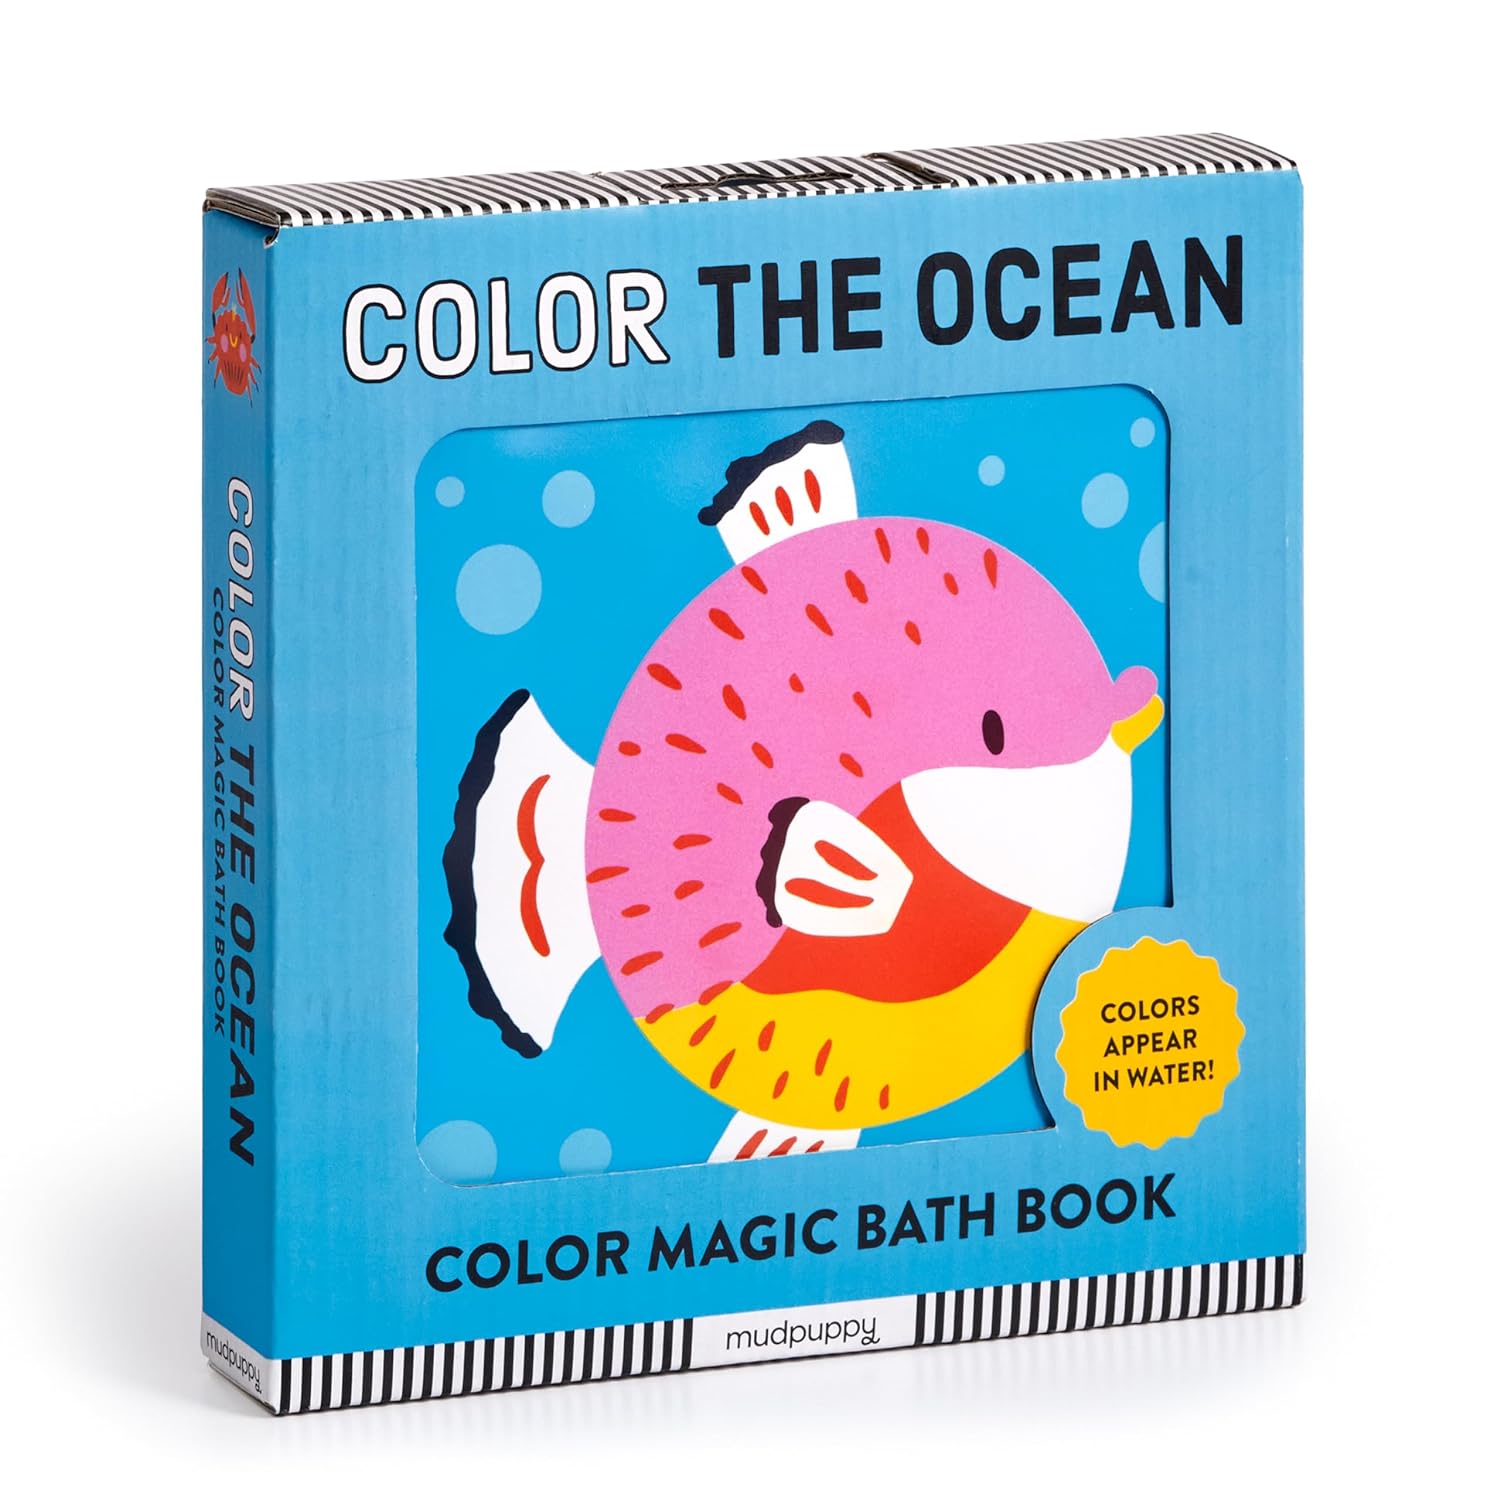 Bath Book "Color the Ocean Color Magic"